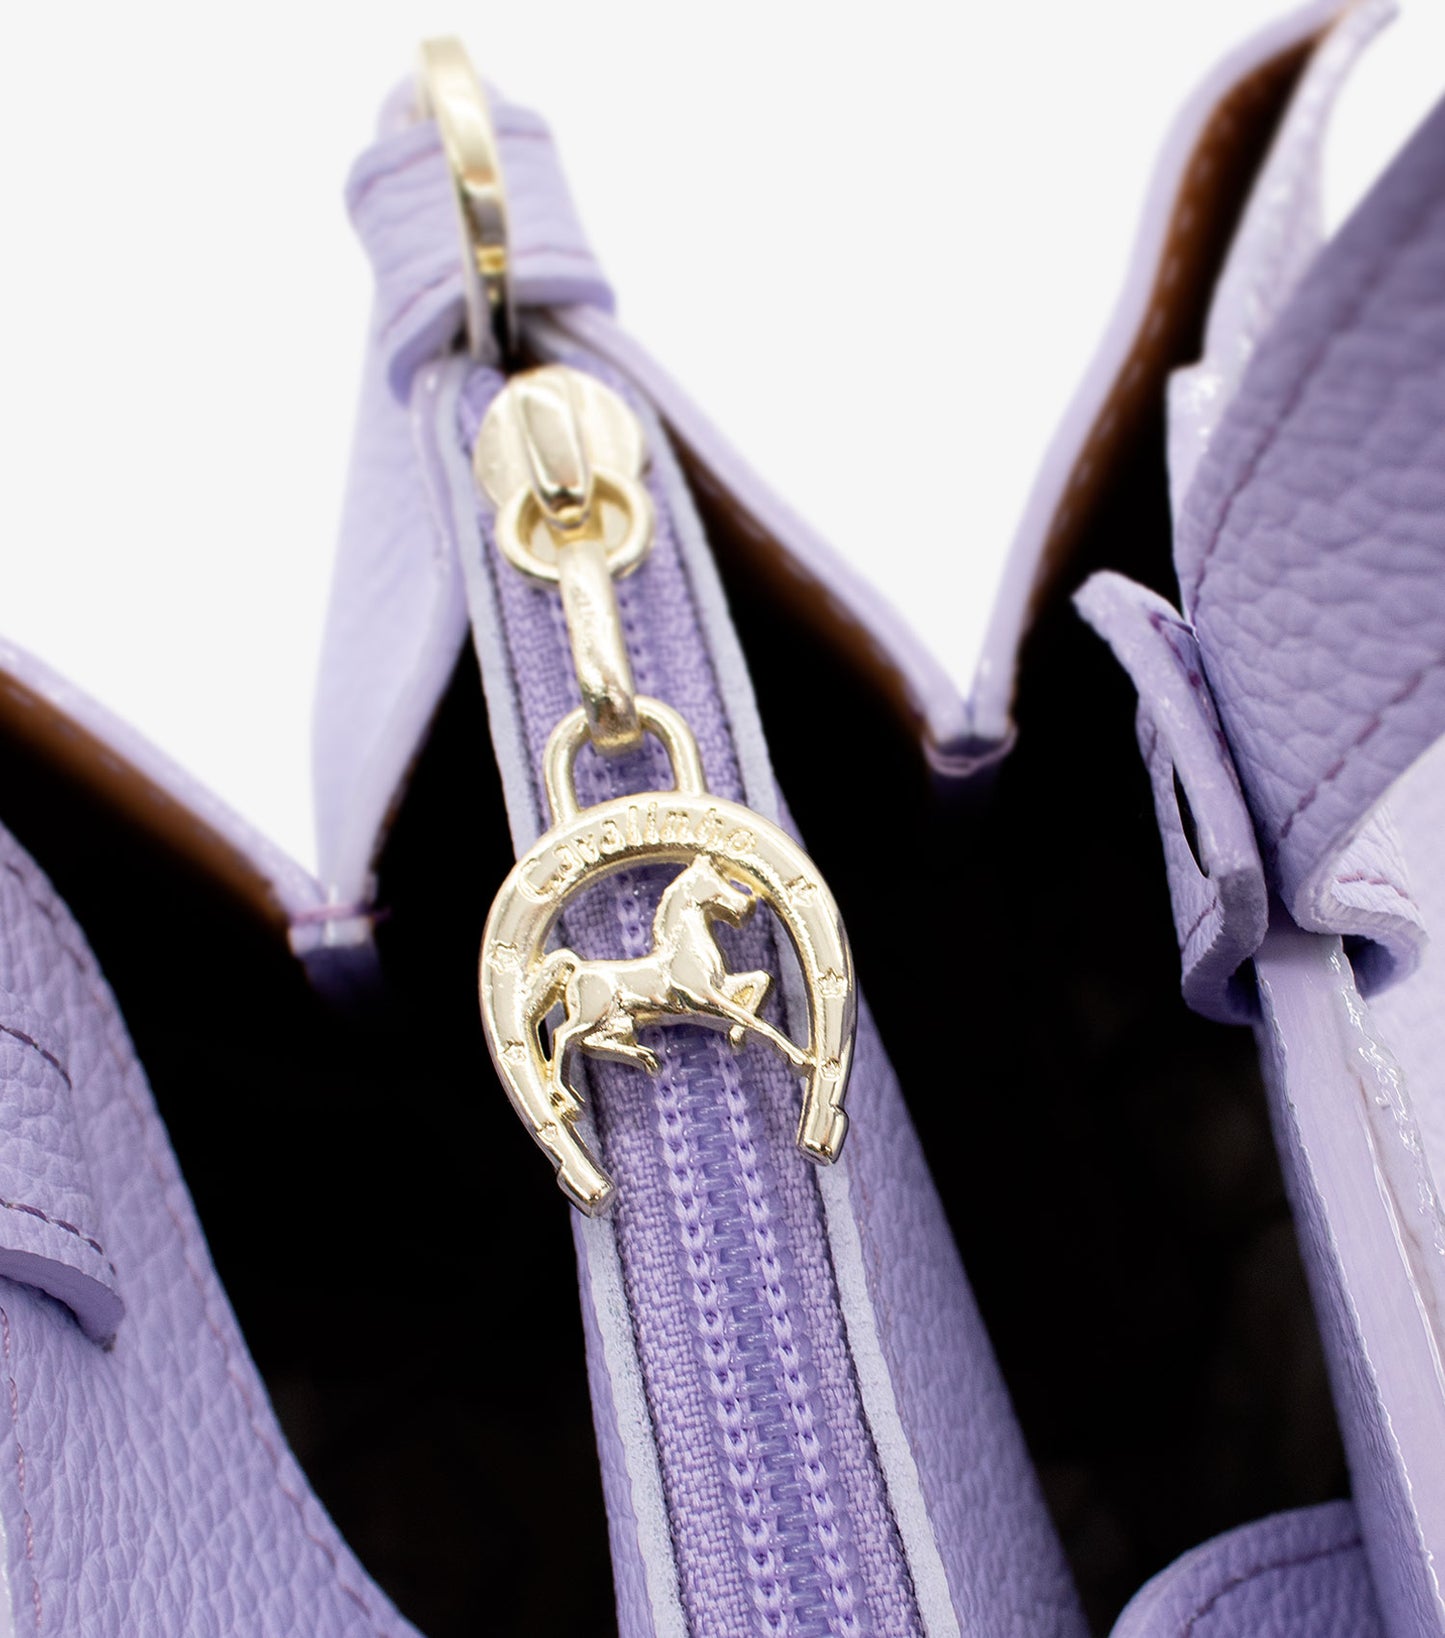 #color_ Lilac | Cavalinho Muse Leather Handbag - Lilac - 18300490.39_P05